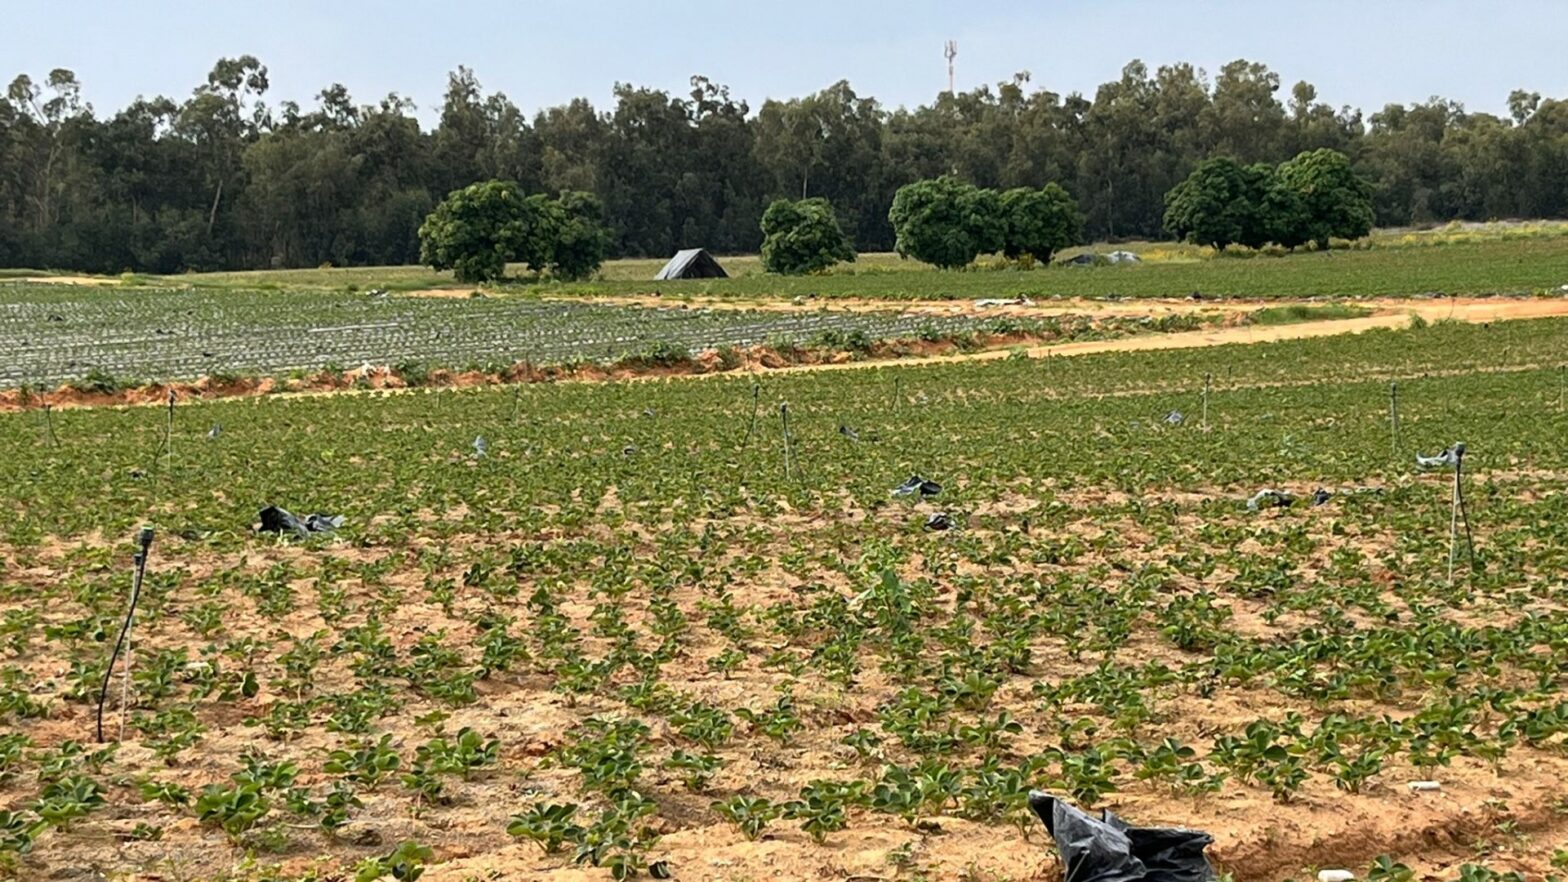 Aardbeienveld in Israël - waar May als vrijwilliger heeft gewerkt